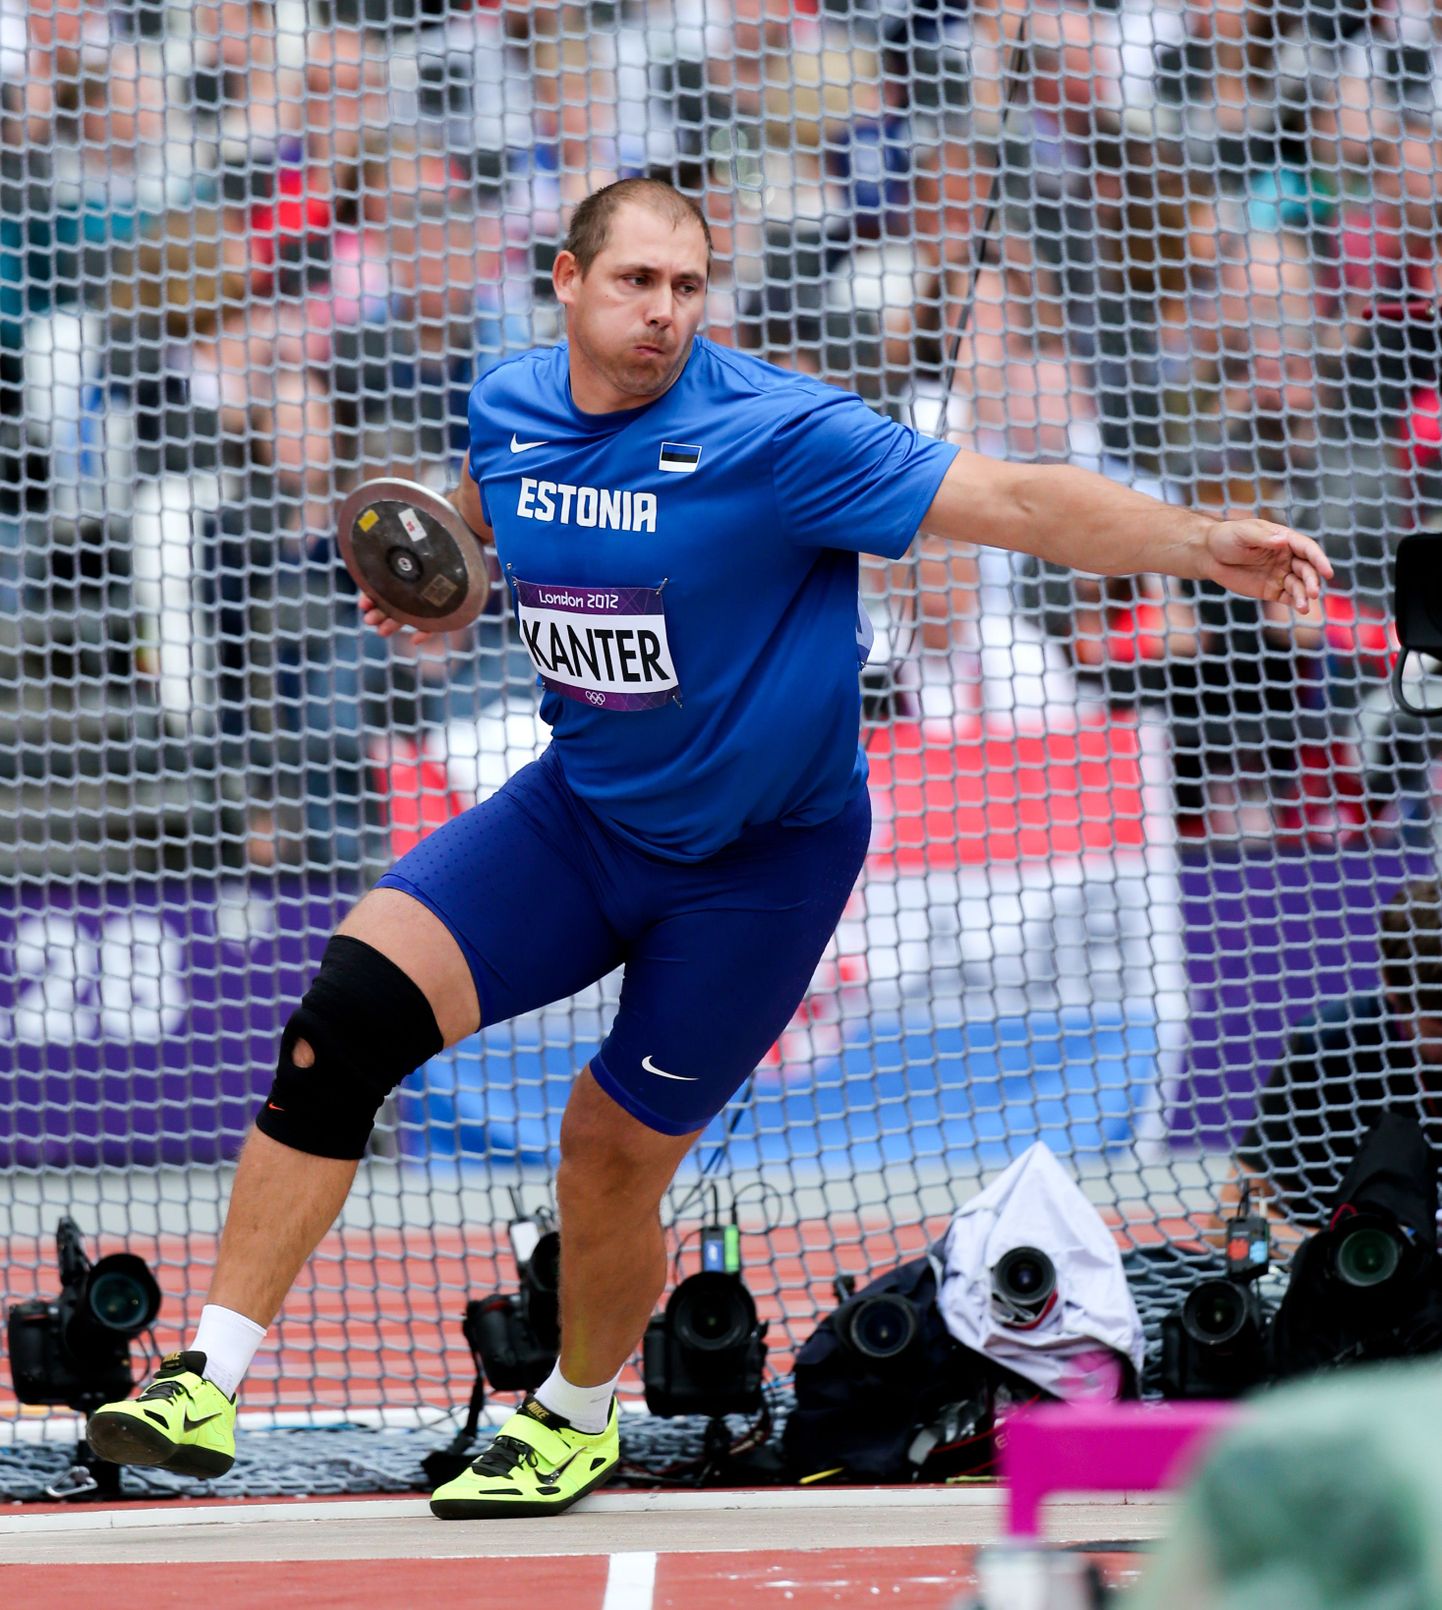 Londoni olümpiapronks Gerd Kanter võisstleb ka Eesti meistrivõistlustel.